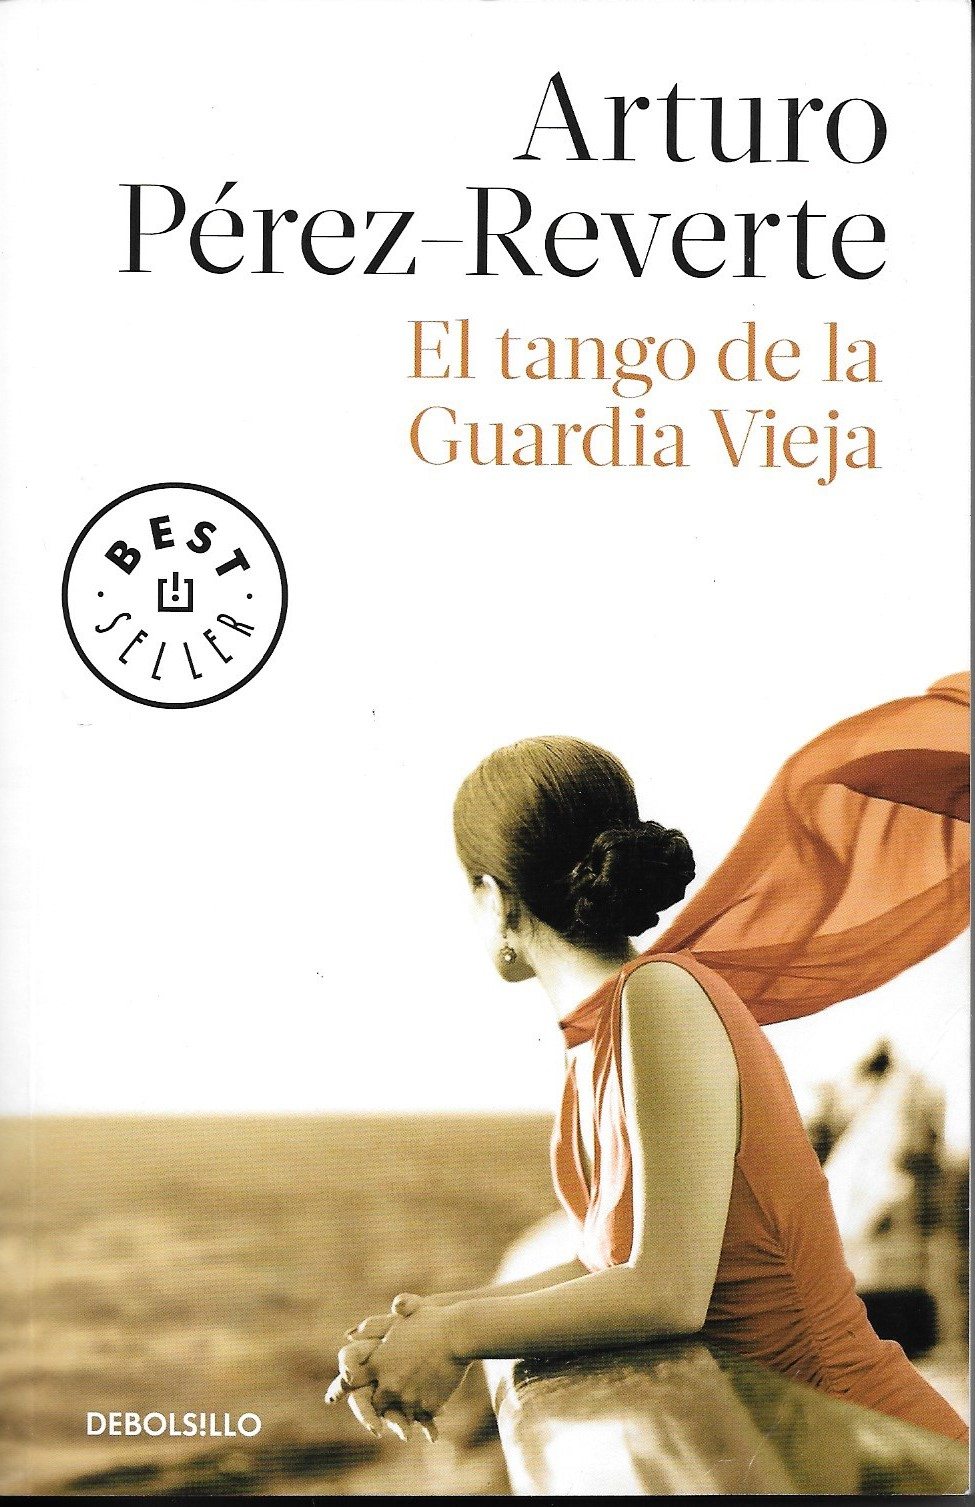 Arturo Pérez Reverte presentó el libro ” What We Become” -“El tango de la  Guardia Vieja” en Miami – María Juliana Villafañe